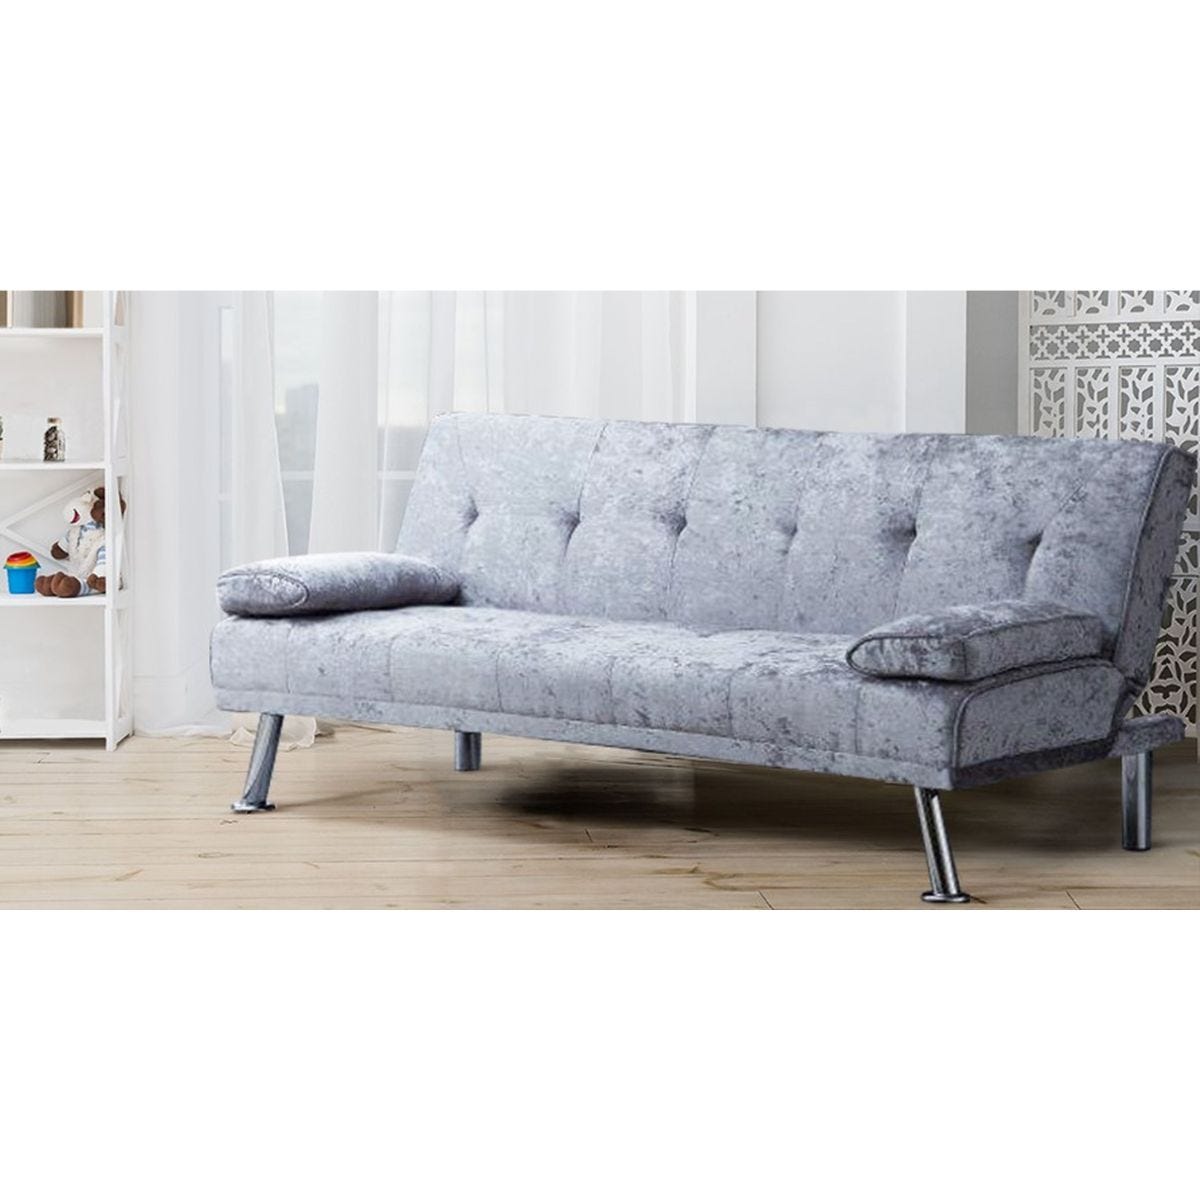 SleepOn Stunning Crushed Velvet Italian Designer Style Sofa Bed With Chrome Legs Steel